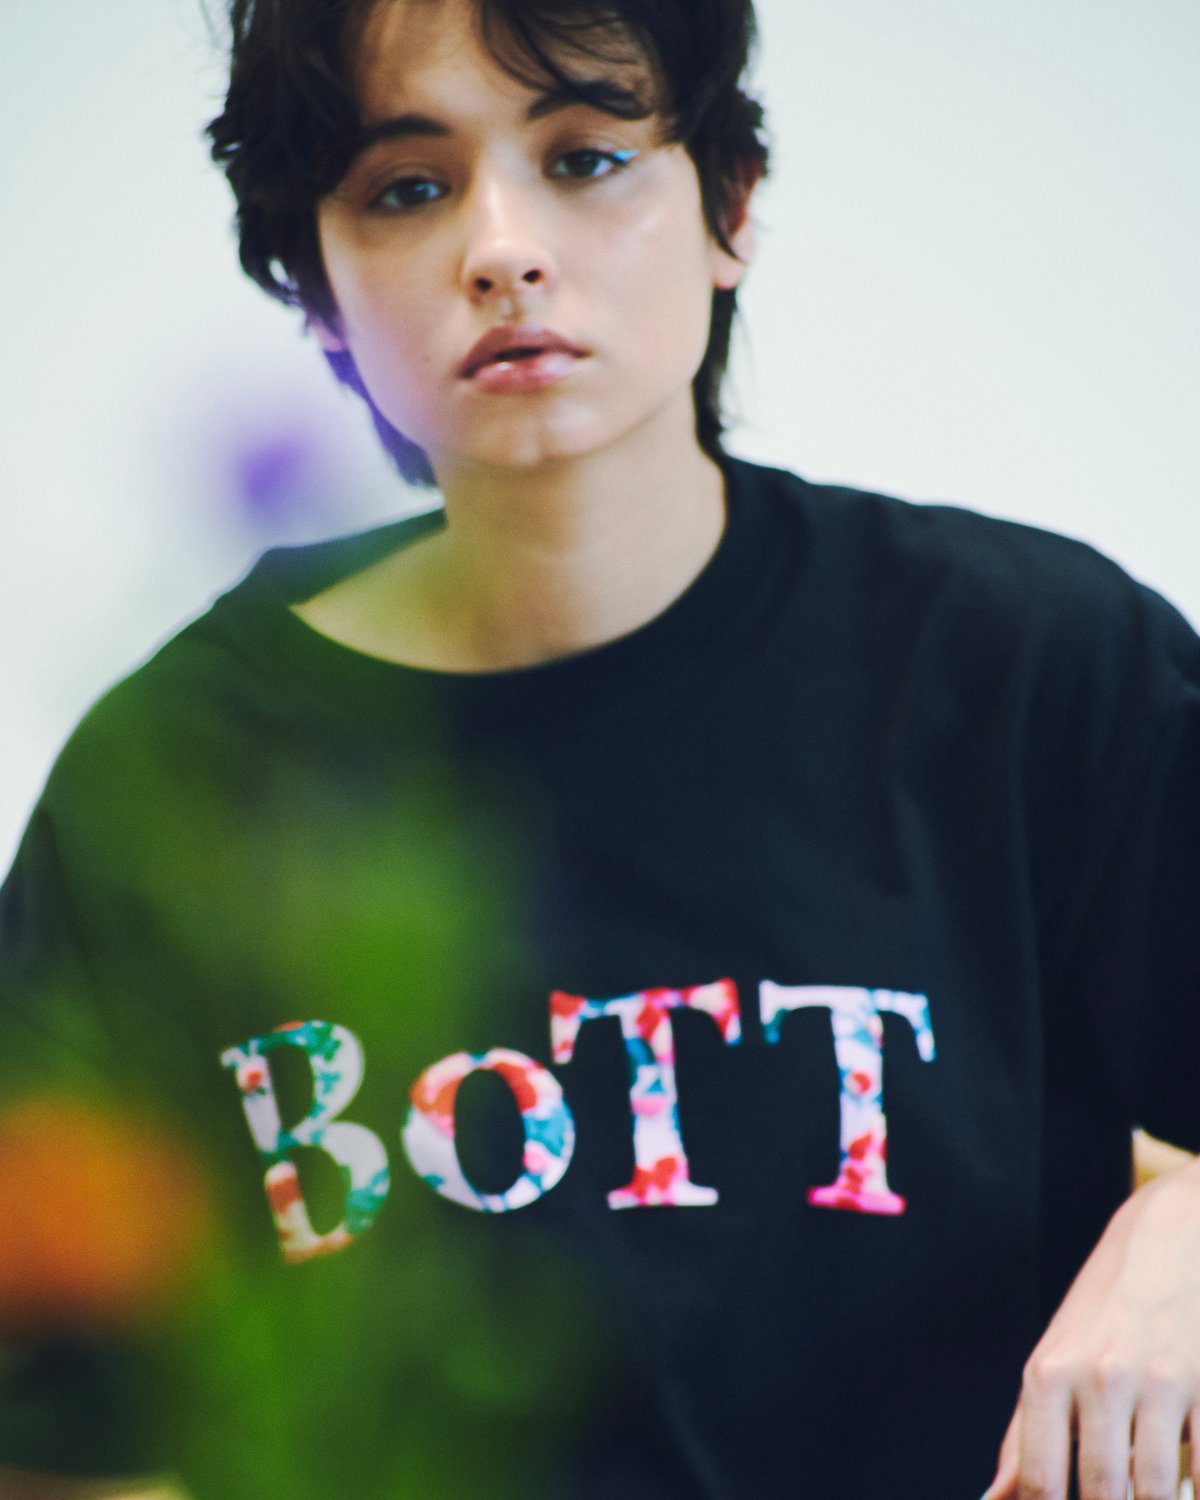 永井博 x bai × BoTT OG LOGO Tシャツ Mサイズ